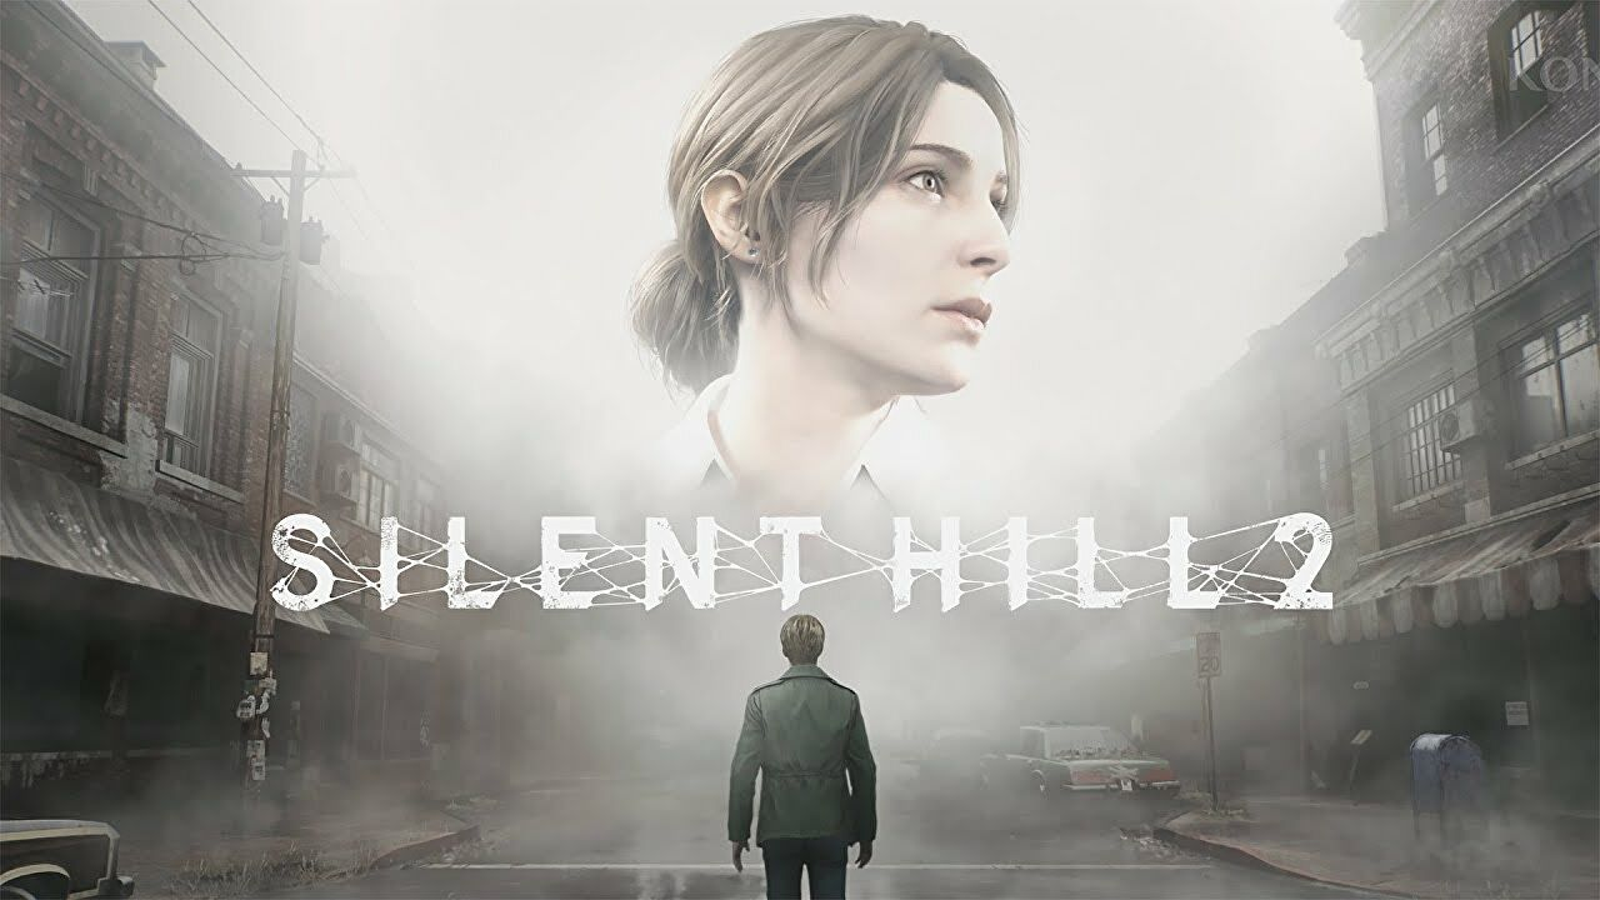 Designer de Silent Hill partilha conceito original de Pyramid Head